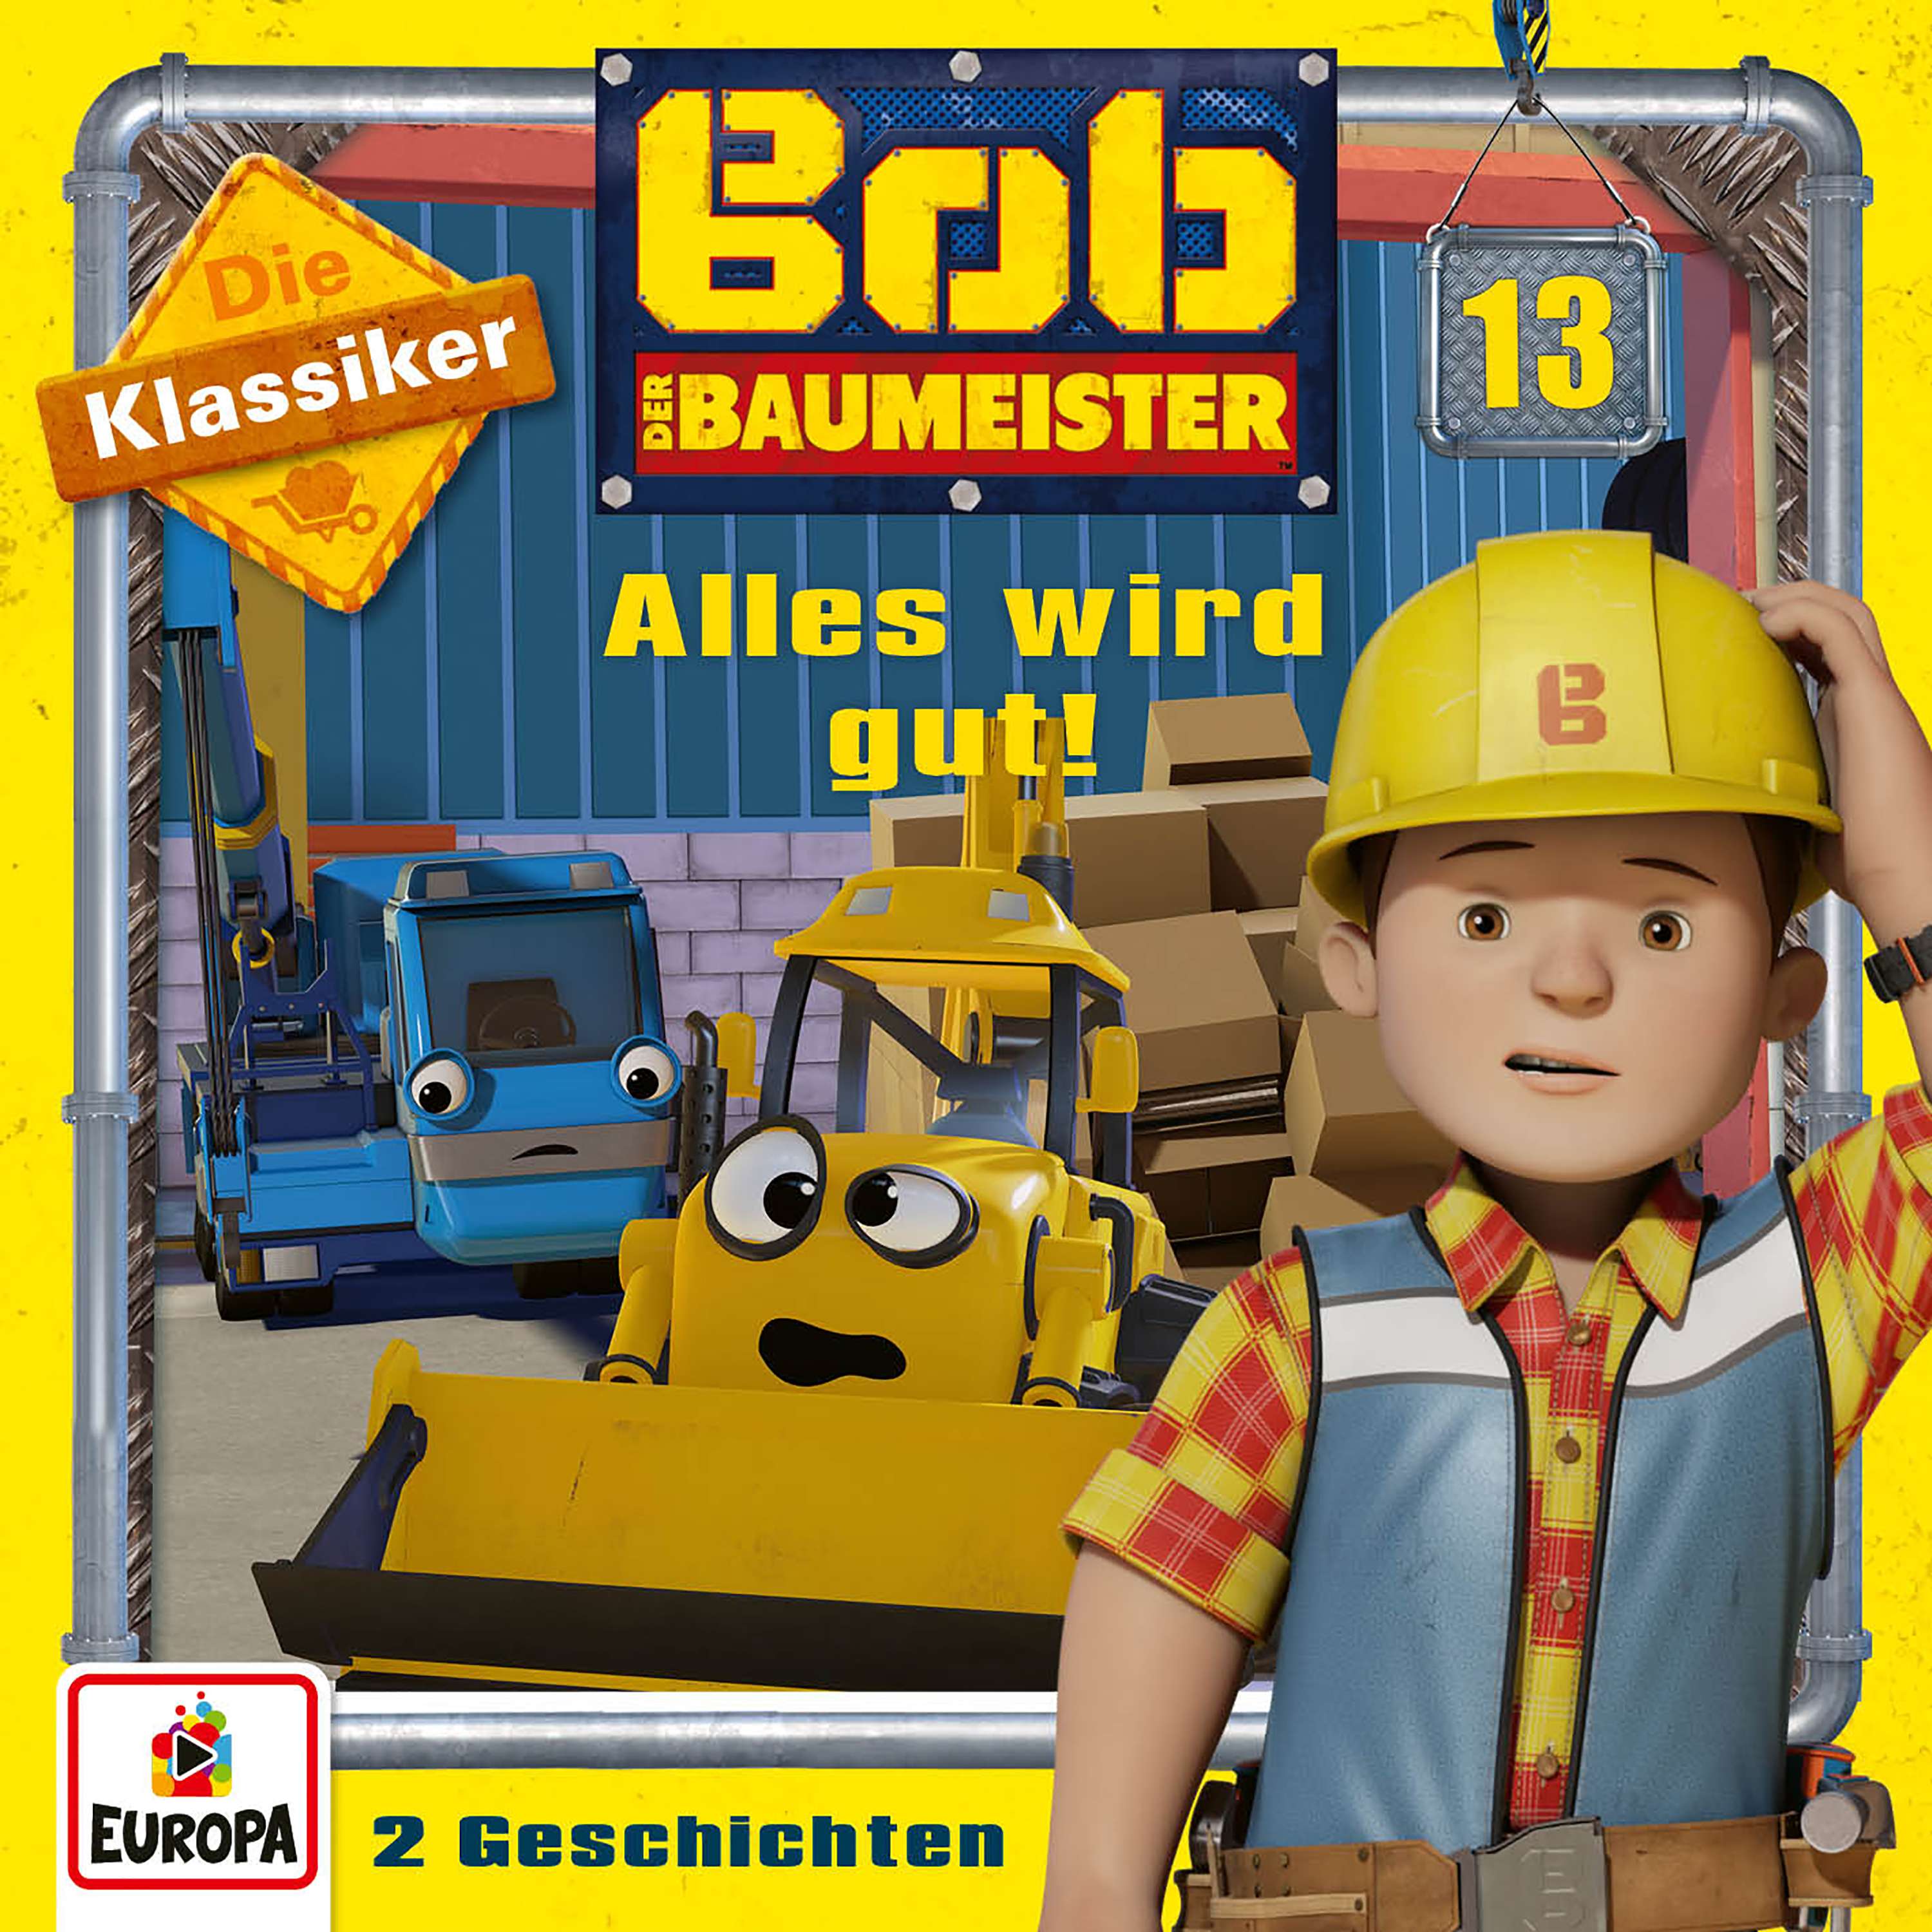 Bob der Baumeister - Alles wird gut! (Die Klassiker)